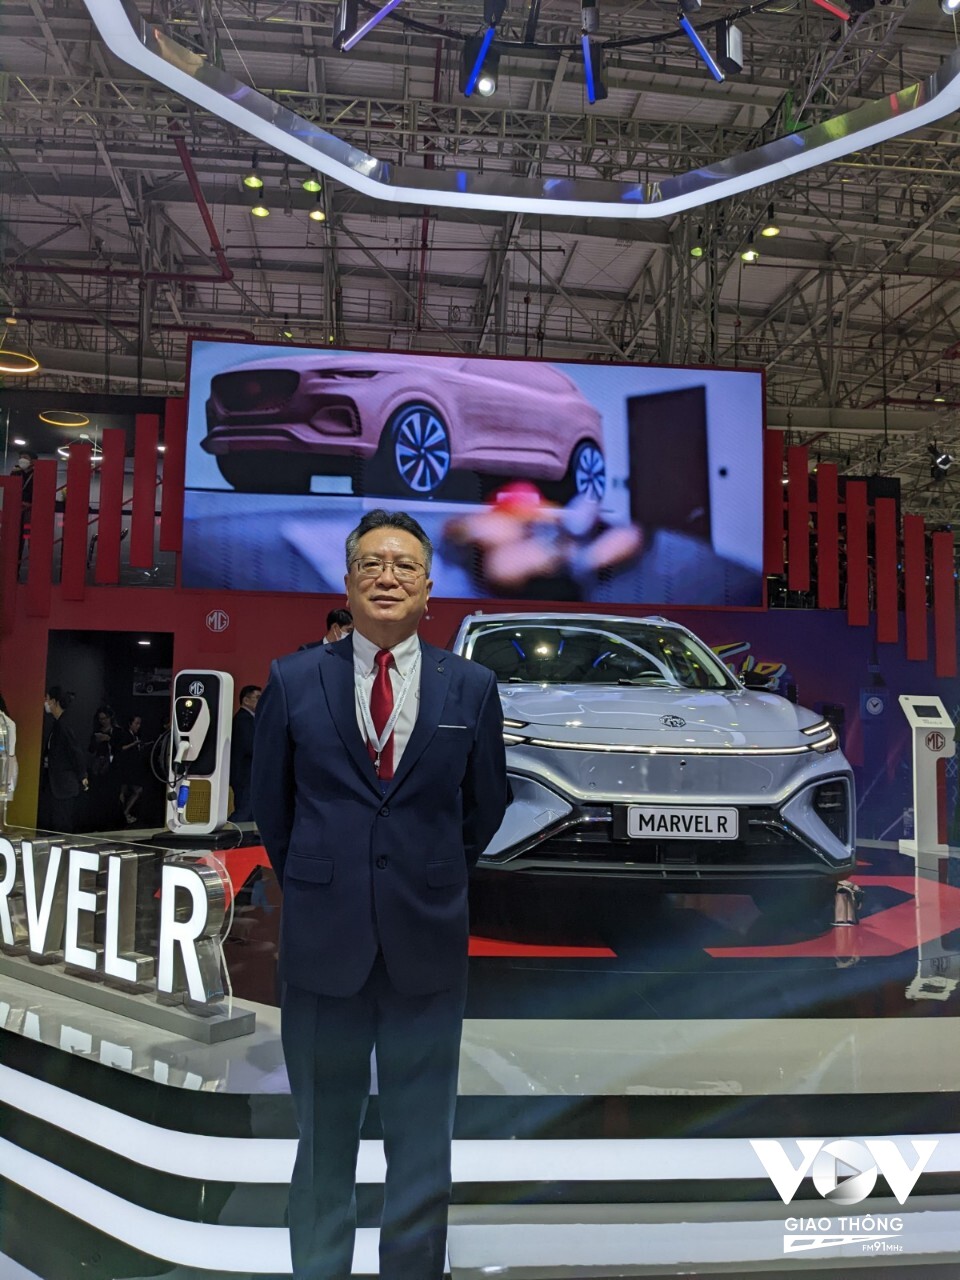 Ông Teh Kim Hwa – Tổng giám đốc TC Services Vietnam, đơn vị phân phối chính thức MG tại Việt Nam cho biết xe điện là tương lai của ngành ô tô và chỉ trong một thời gian ngắn nữa xe điện sẽ nhanh chóng thay xế xe sử dụng nhiên liệu hóa thạch.